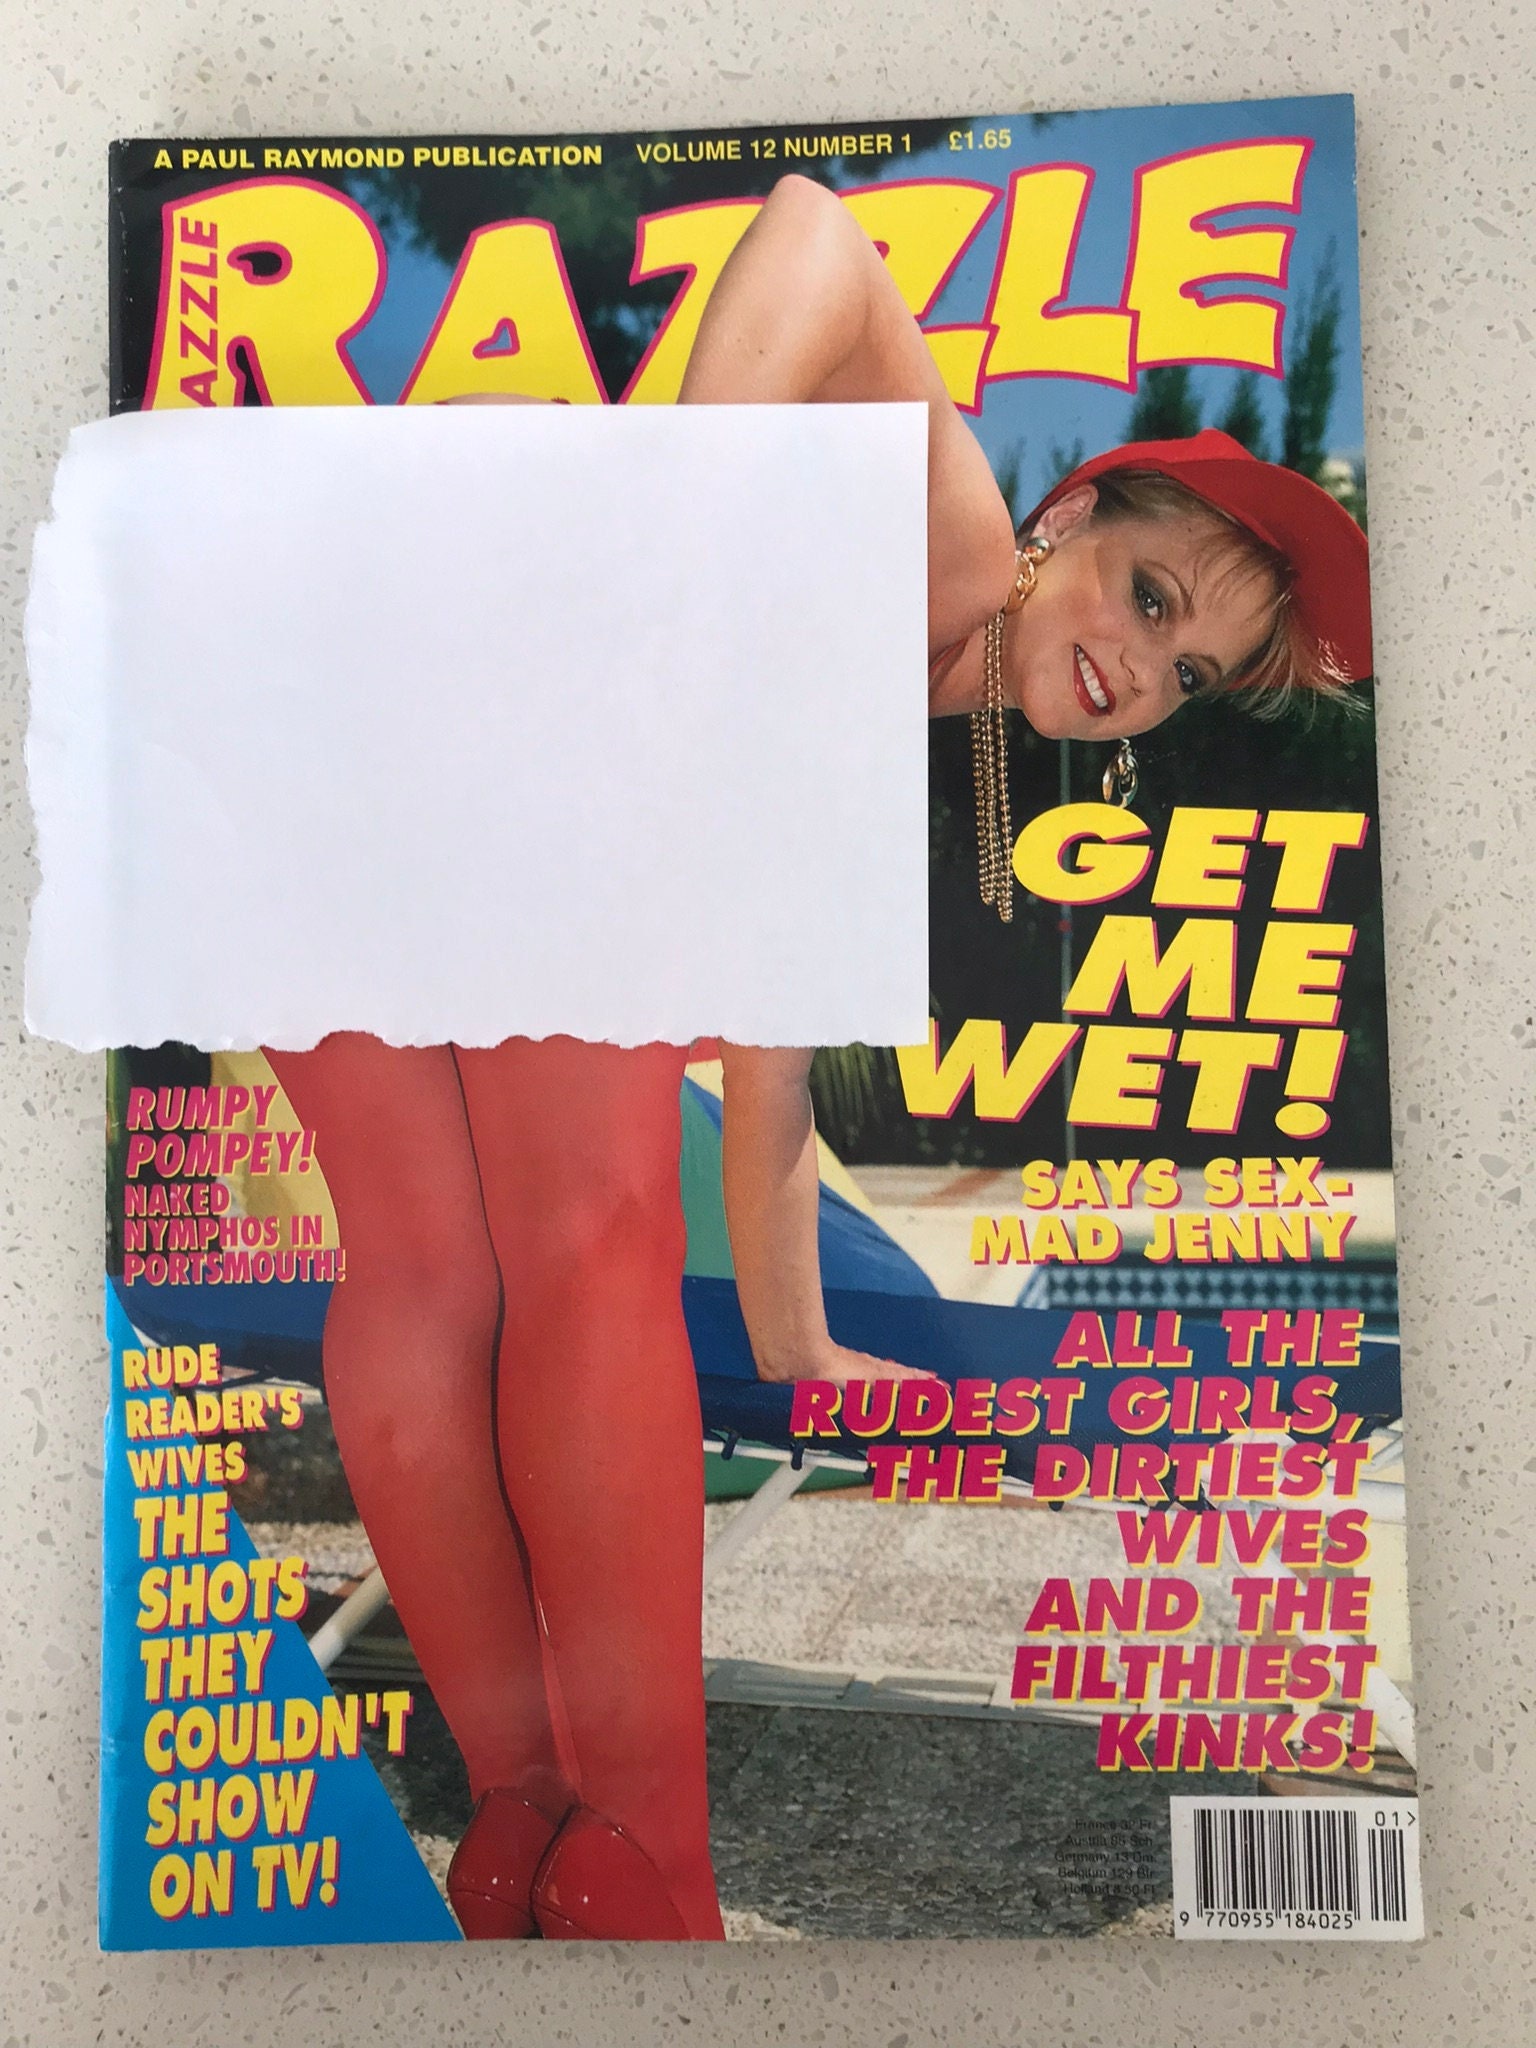 Vintage Razzle Magazine Vol No Glamour Adult Etsy Uk